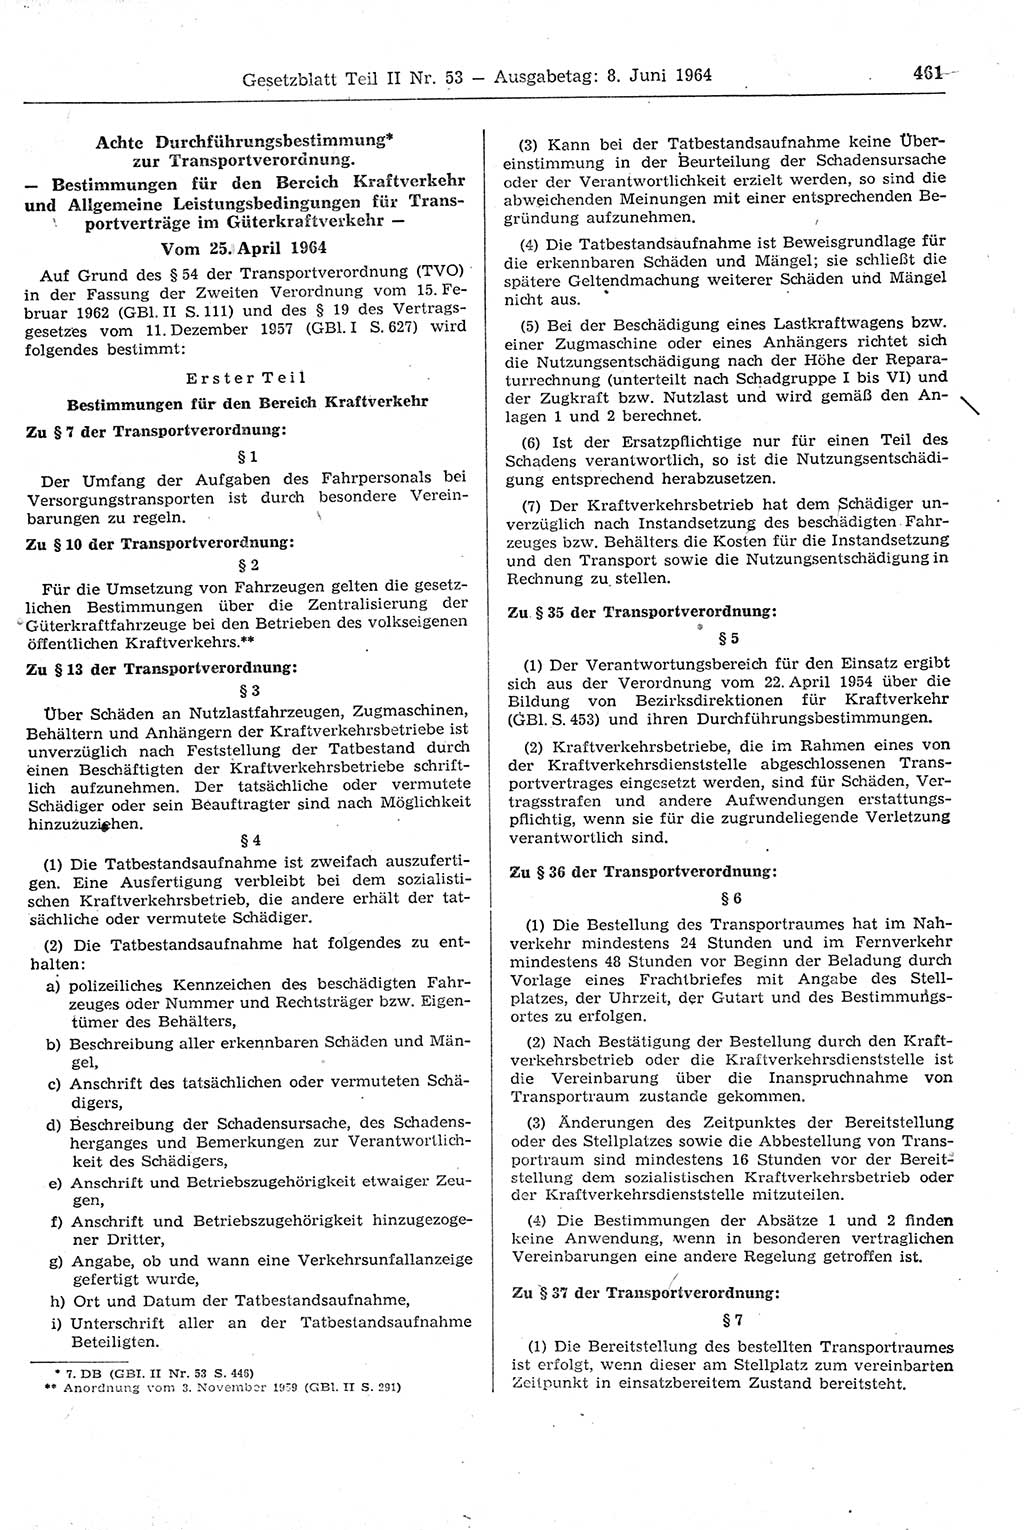 Gesetzblatt (GBl.) der Deutschen Demokratischen Republik (DDR) Teil ⅠⅠ 1964, Seite 461 (GBl. DDR ⅠⅠ 1964, S. 461)